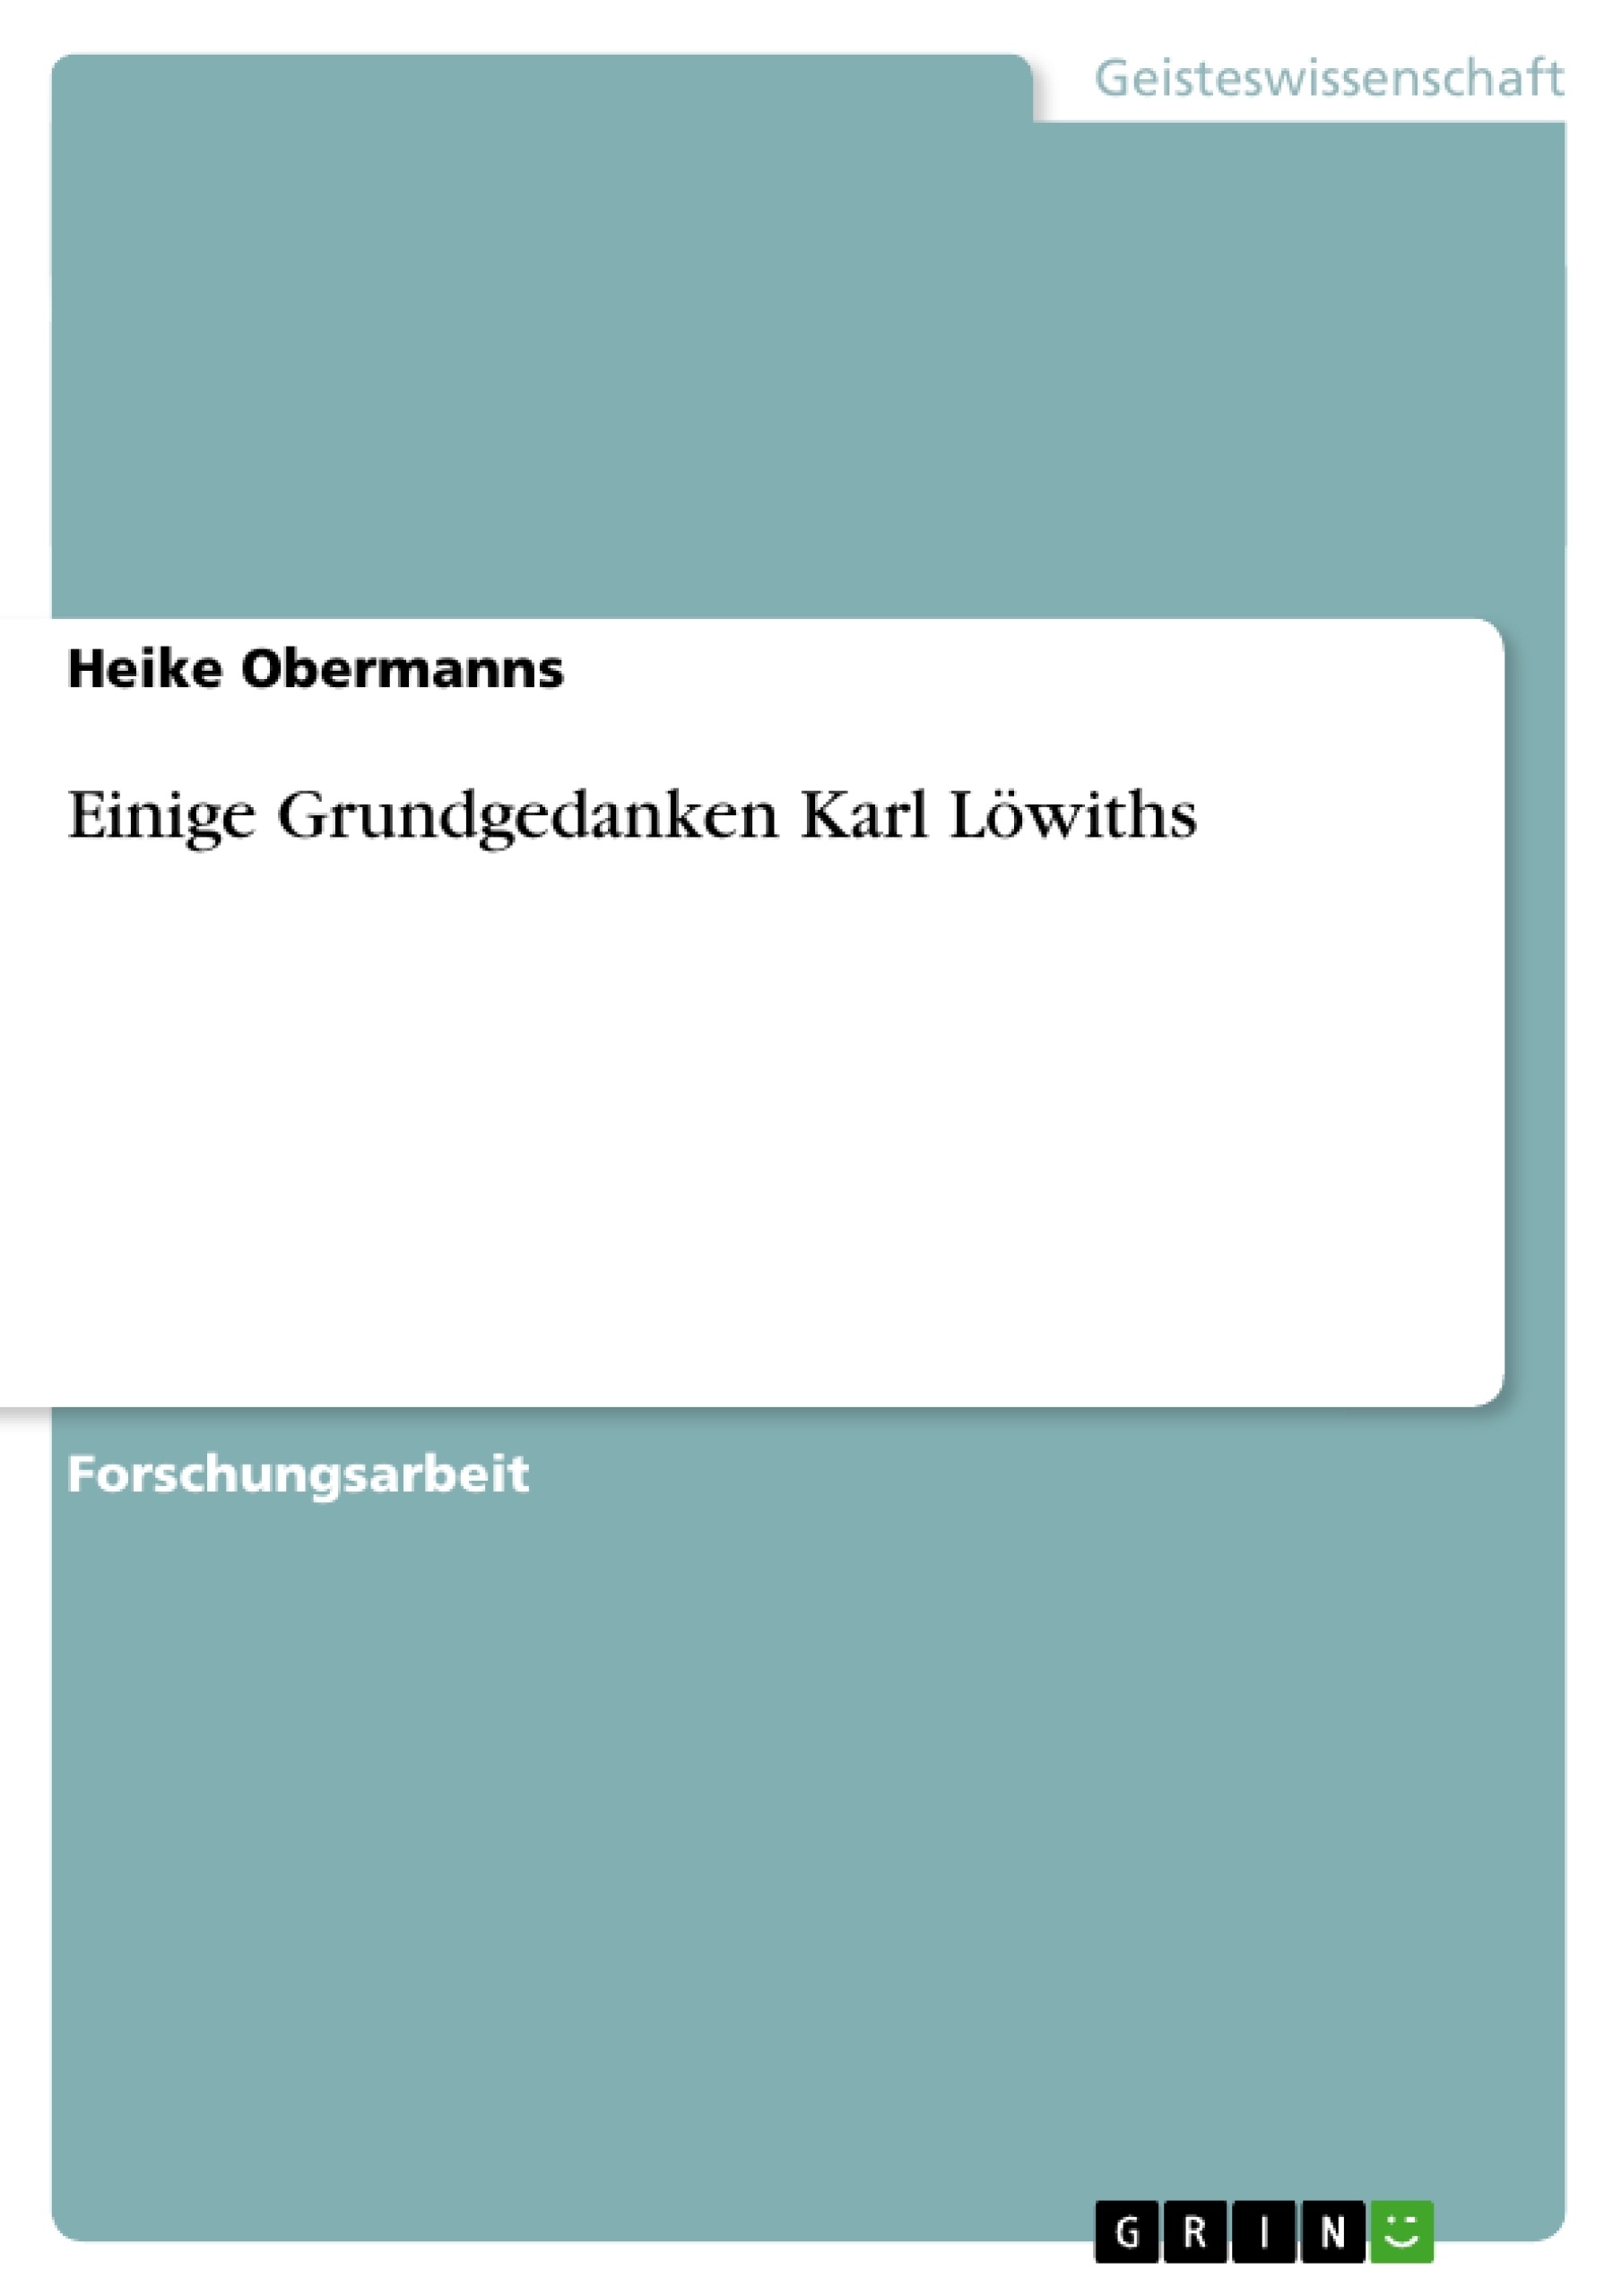 Title: Einige Grundgedanken Karl Löwiths